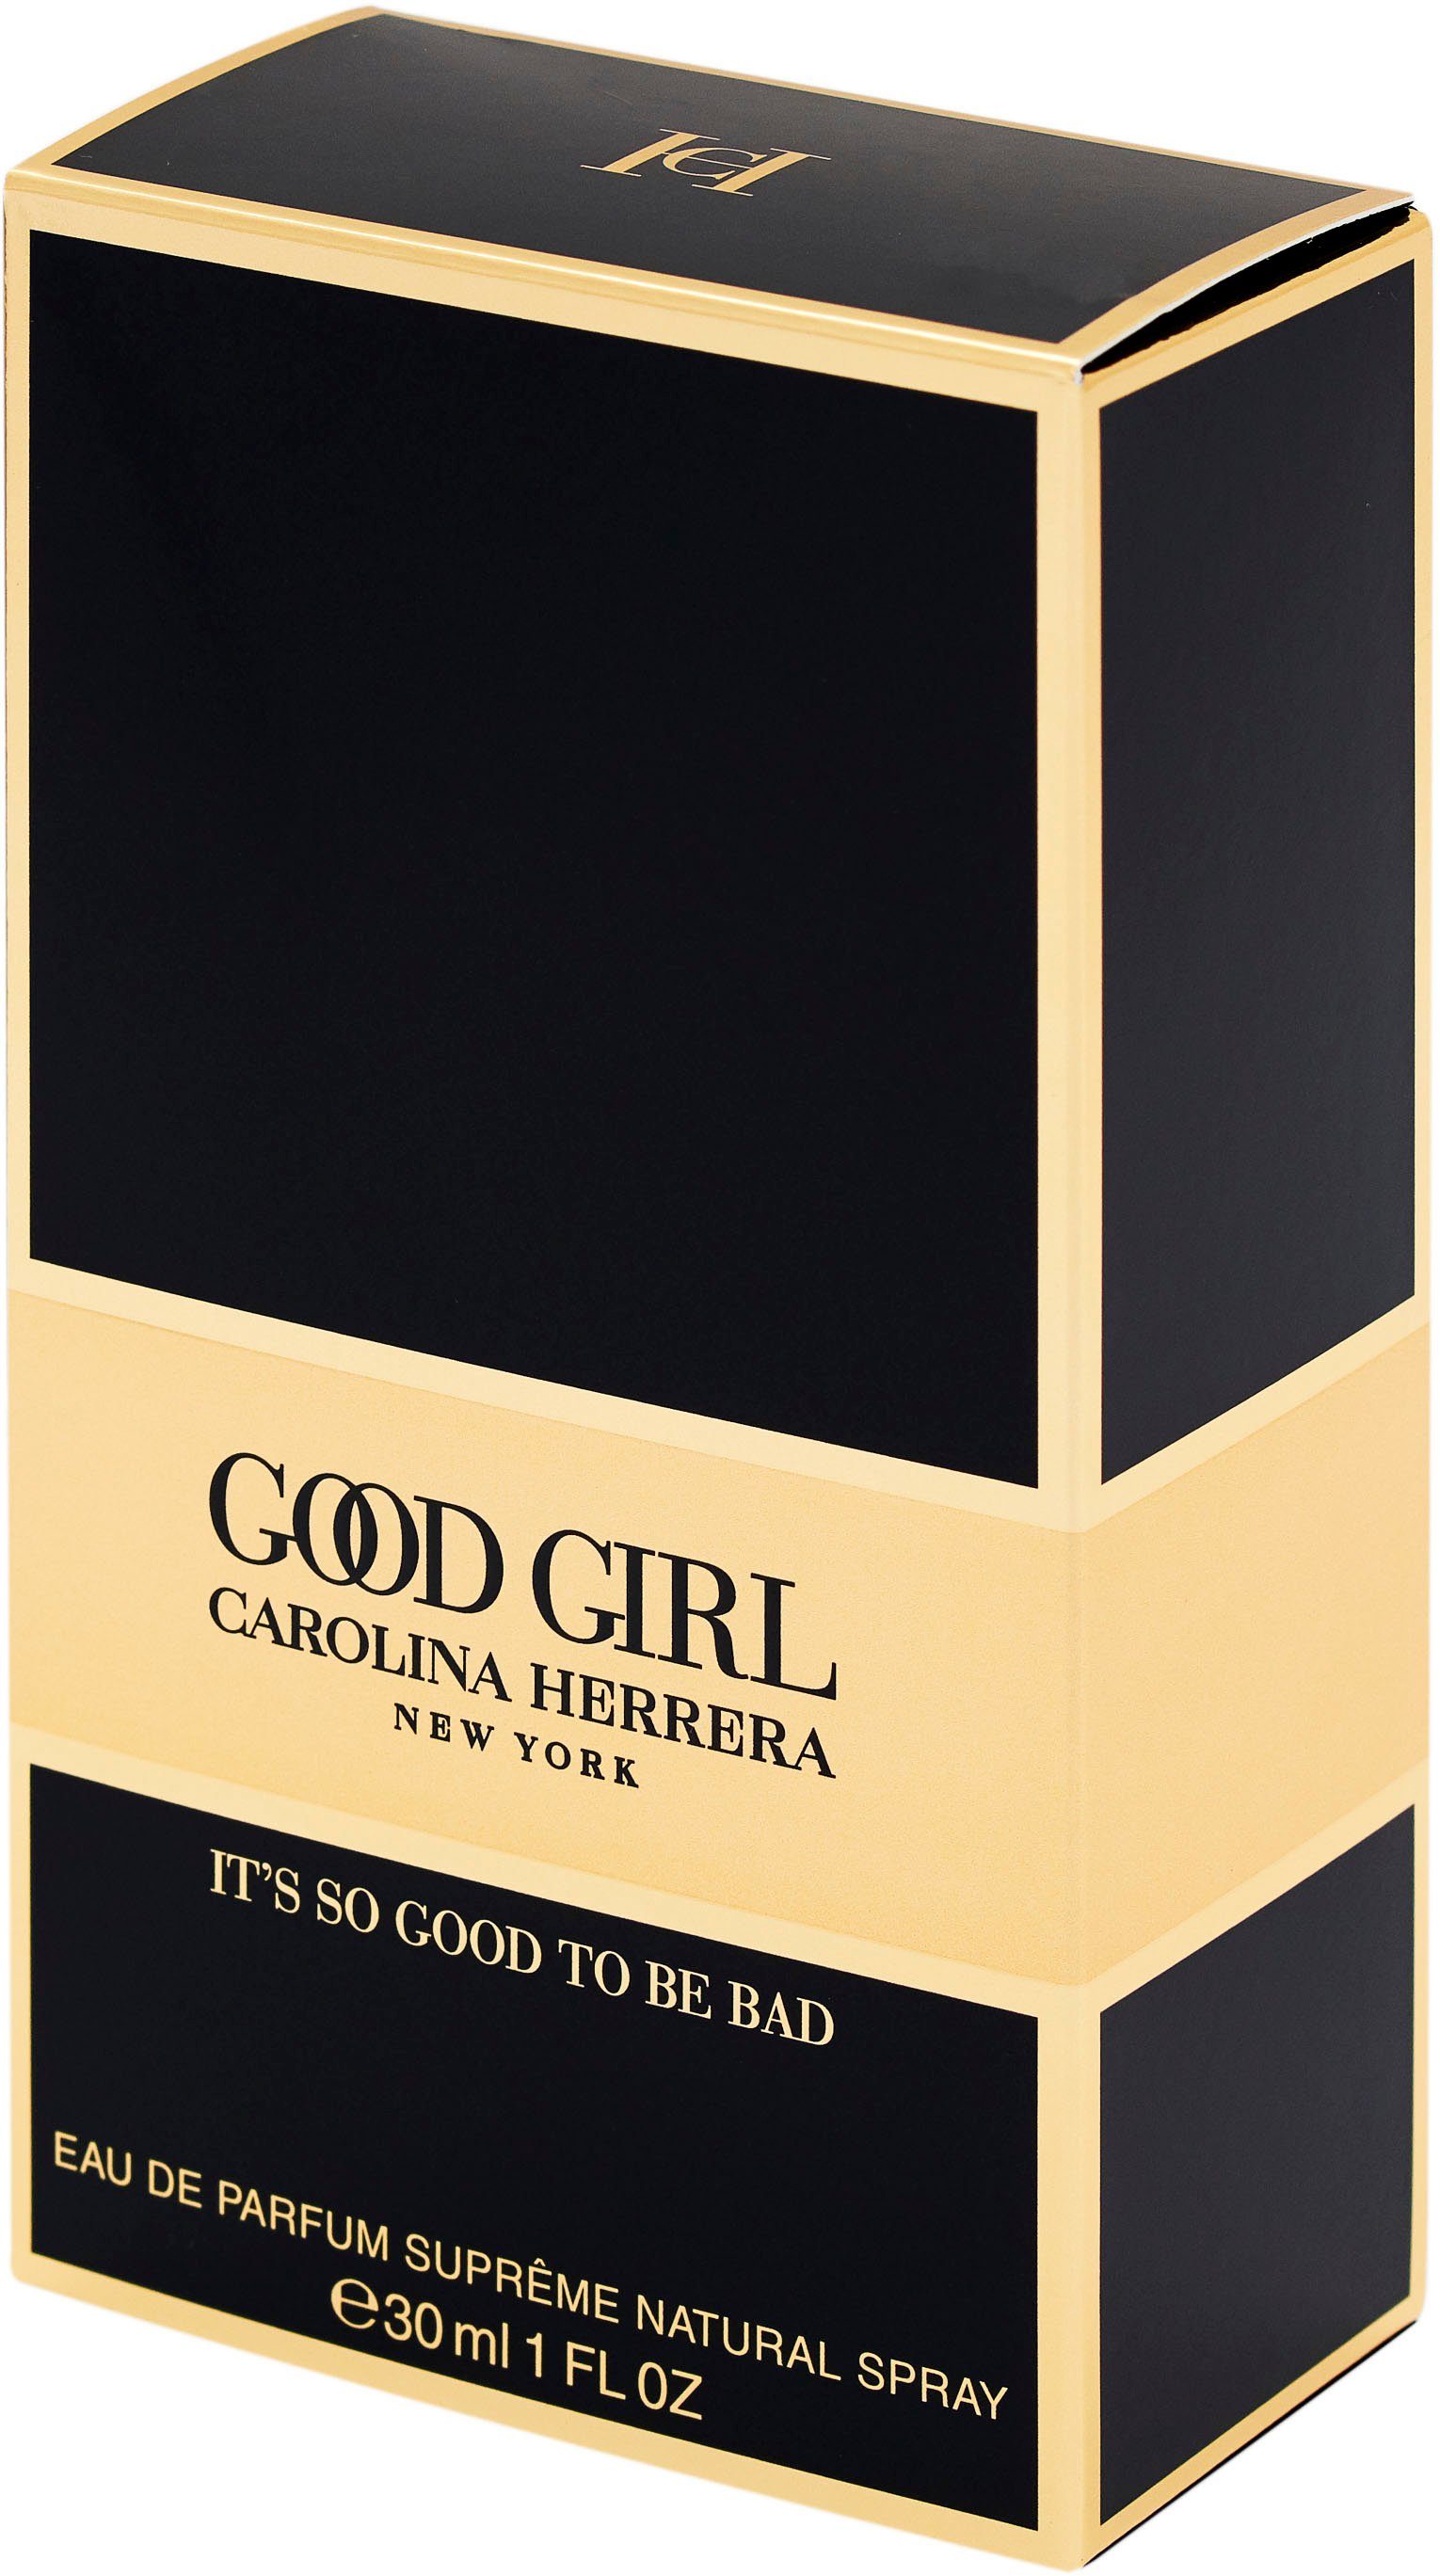 Carolina Good Girl Eau Parfum de Herrera Supreme